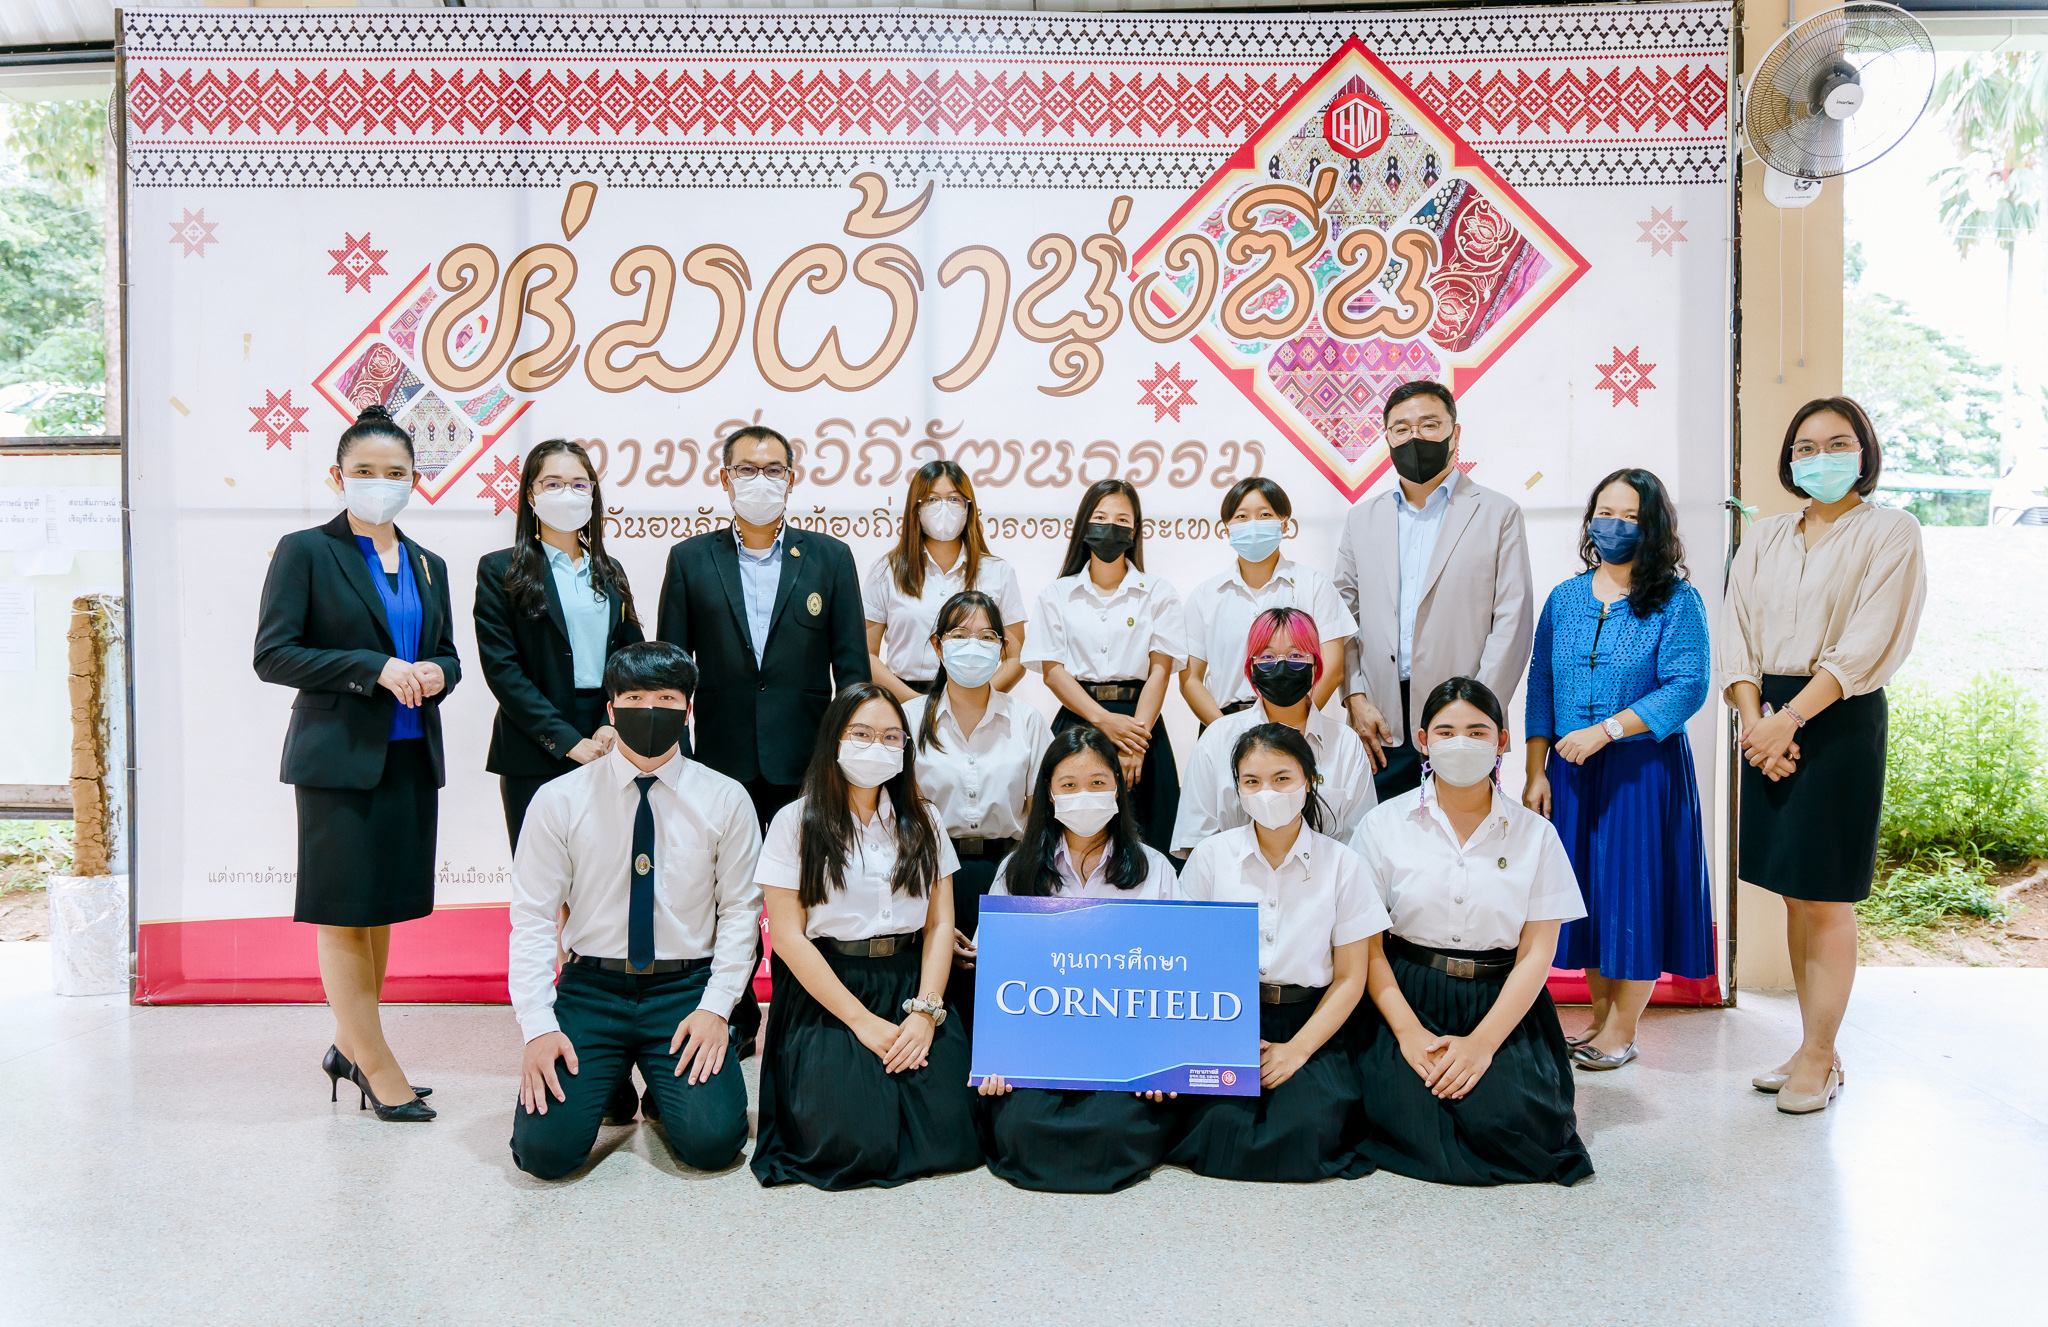 มอบทุนการศึกษาให้แก่นักศึกษาโปรแกรมวิชาภาษาเอเชียตะวันออกสาขาเกาหลี